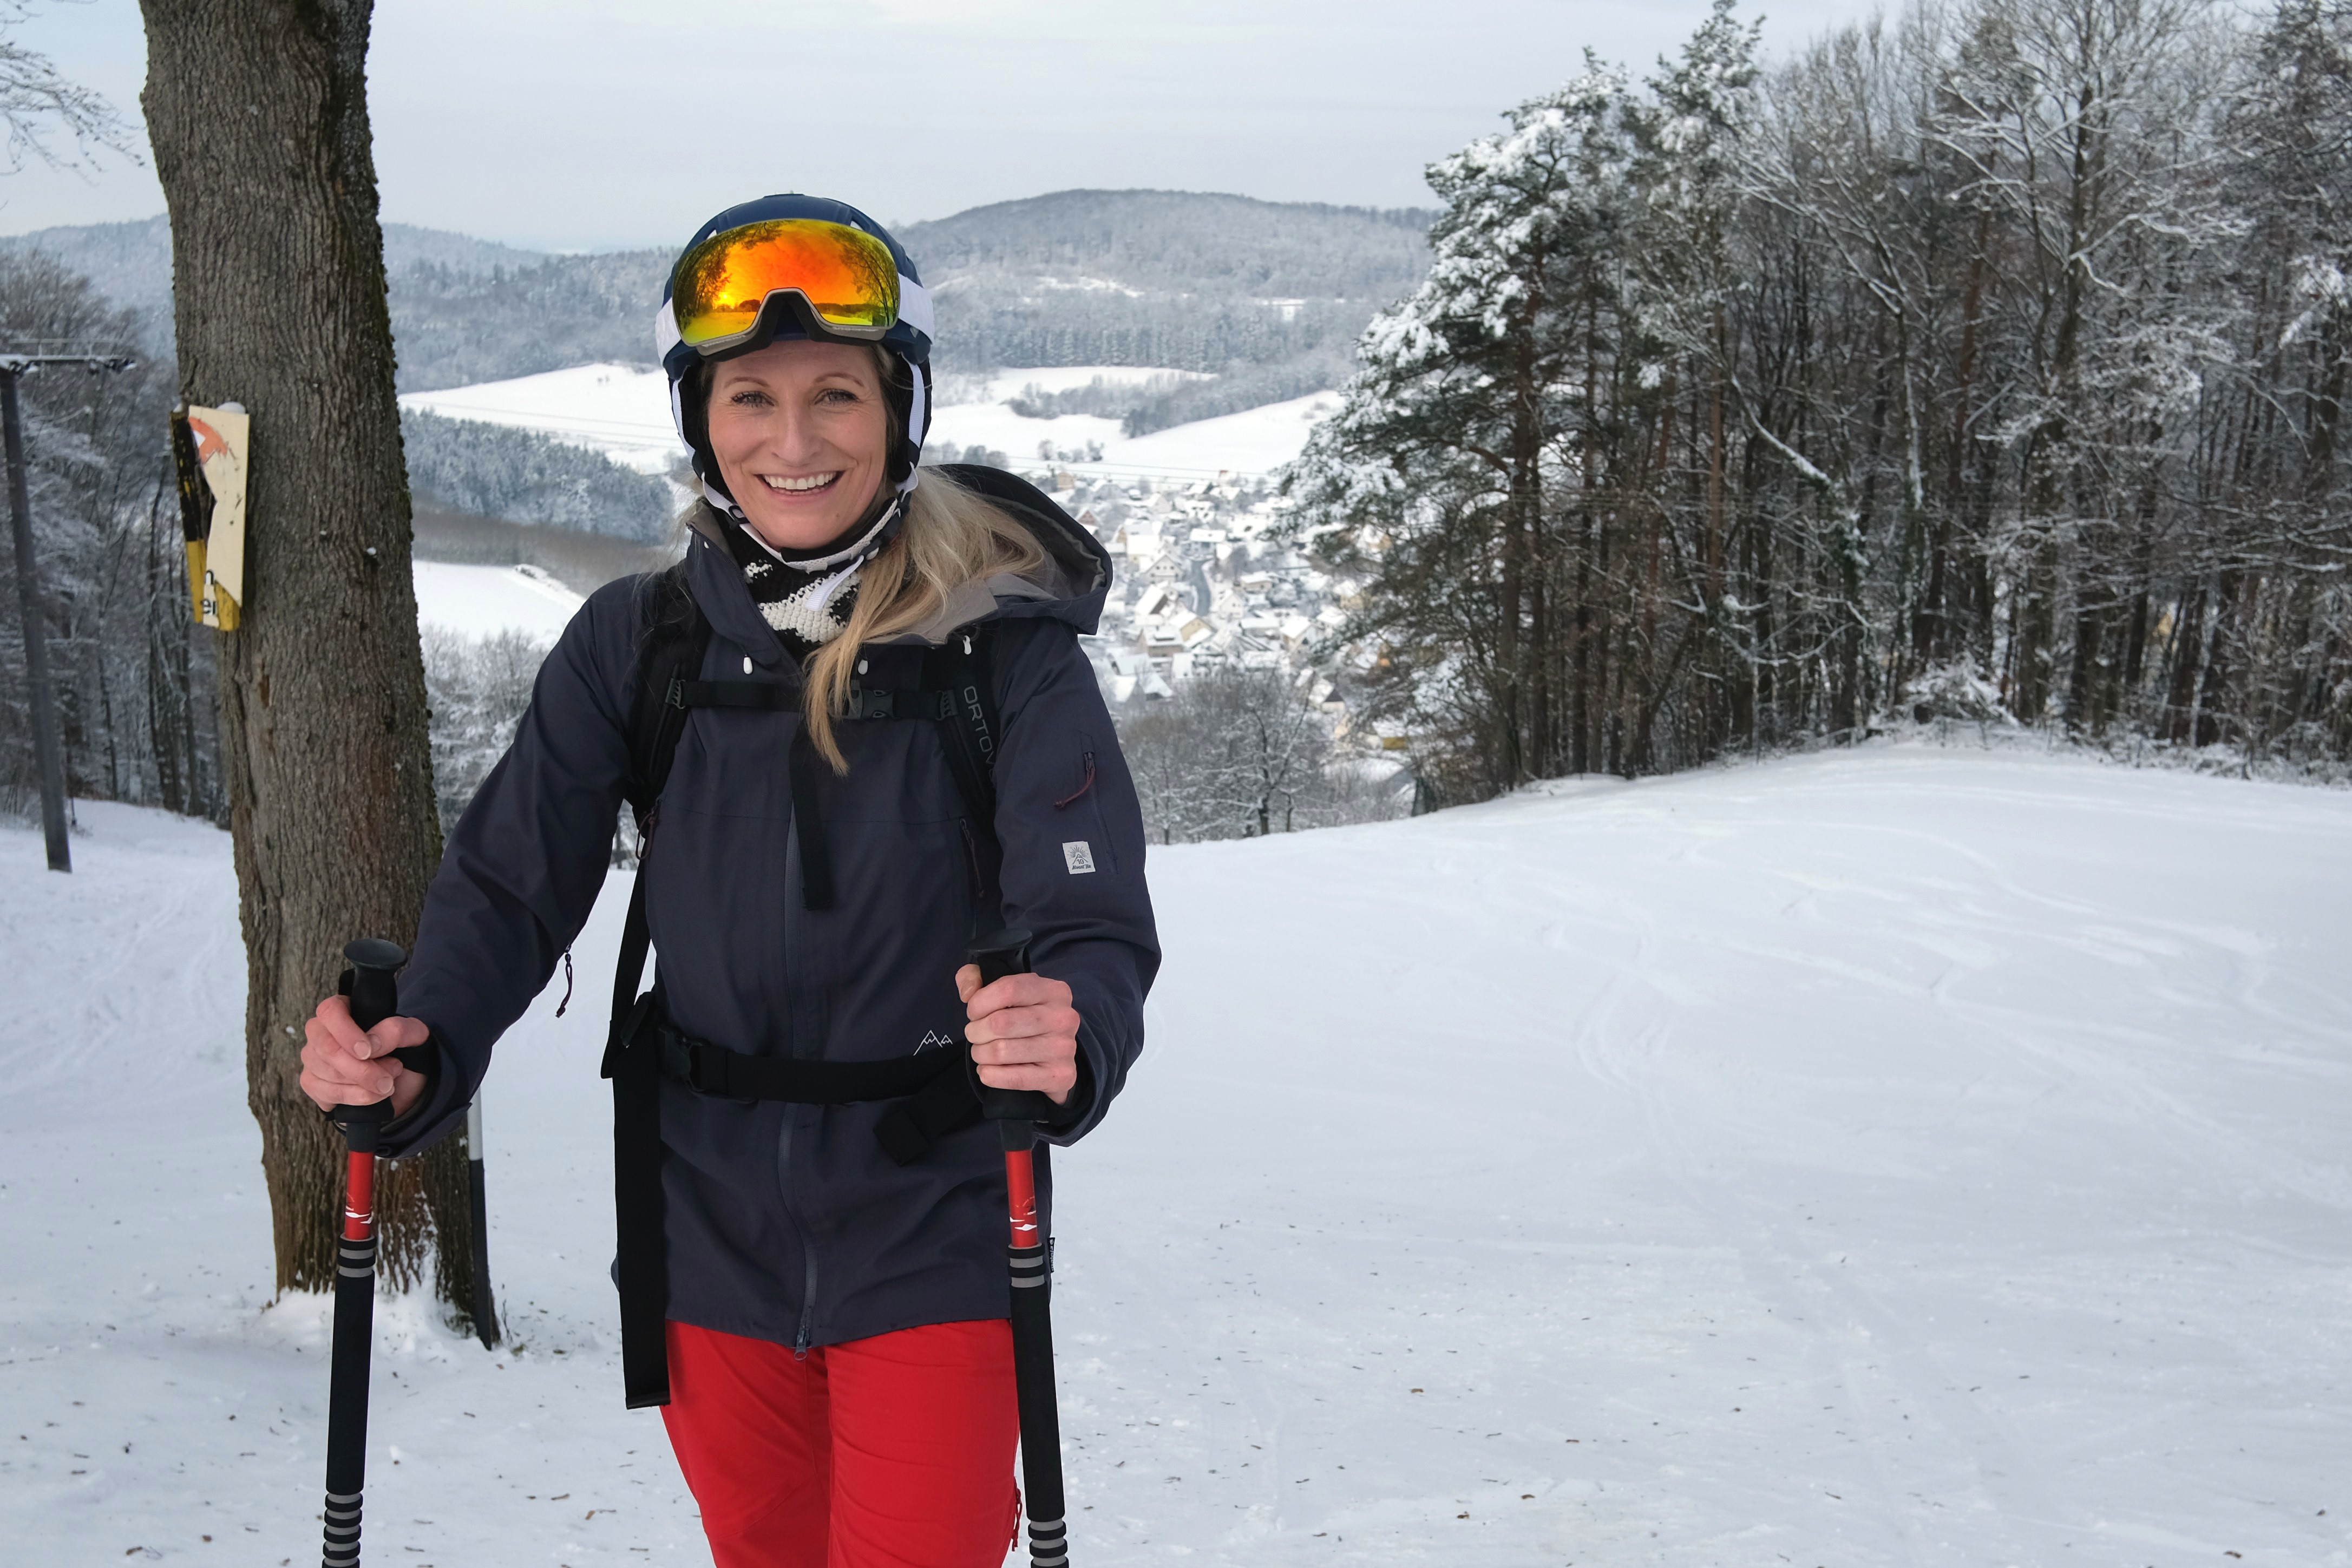 Am Rothenberg gibt es zwei Skilifte, die je 240 Meter lang sind. Der Rodelhang ist 300 m lang.